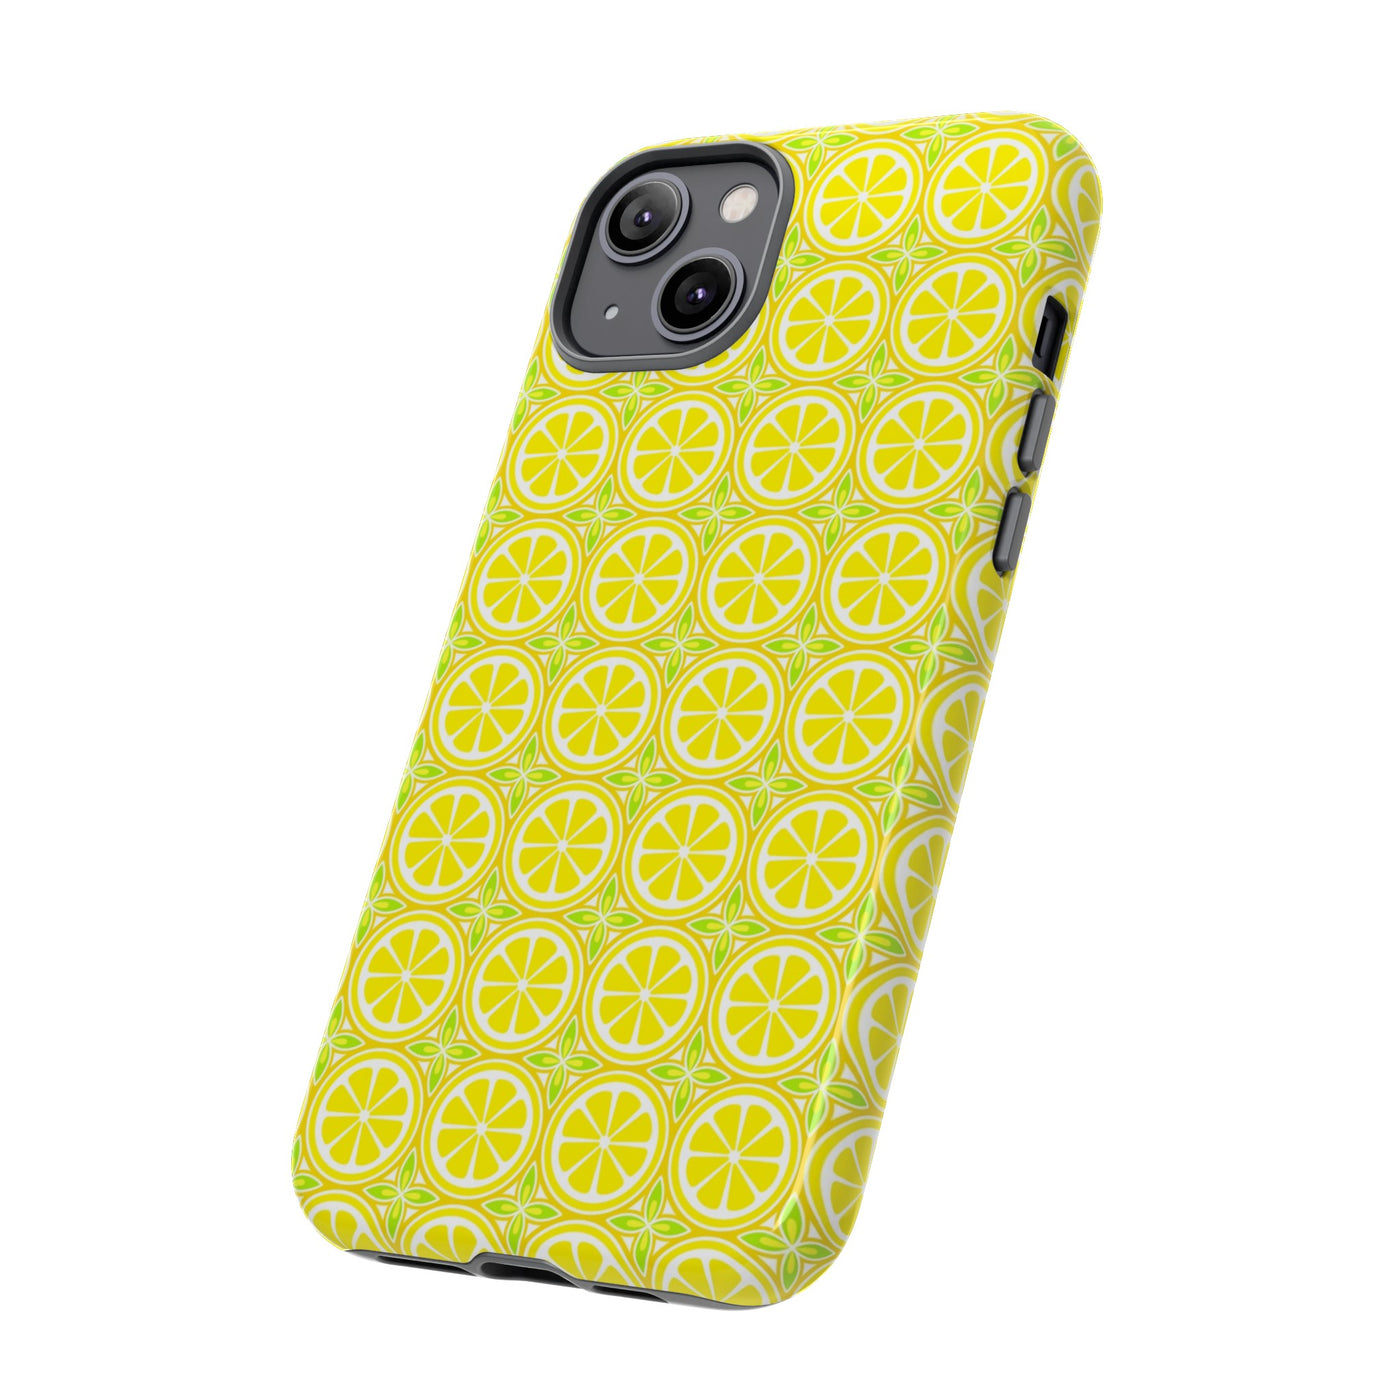 Lemon Phone Case